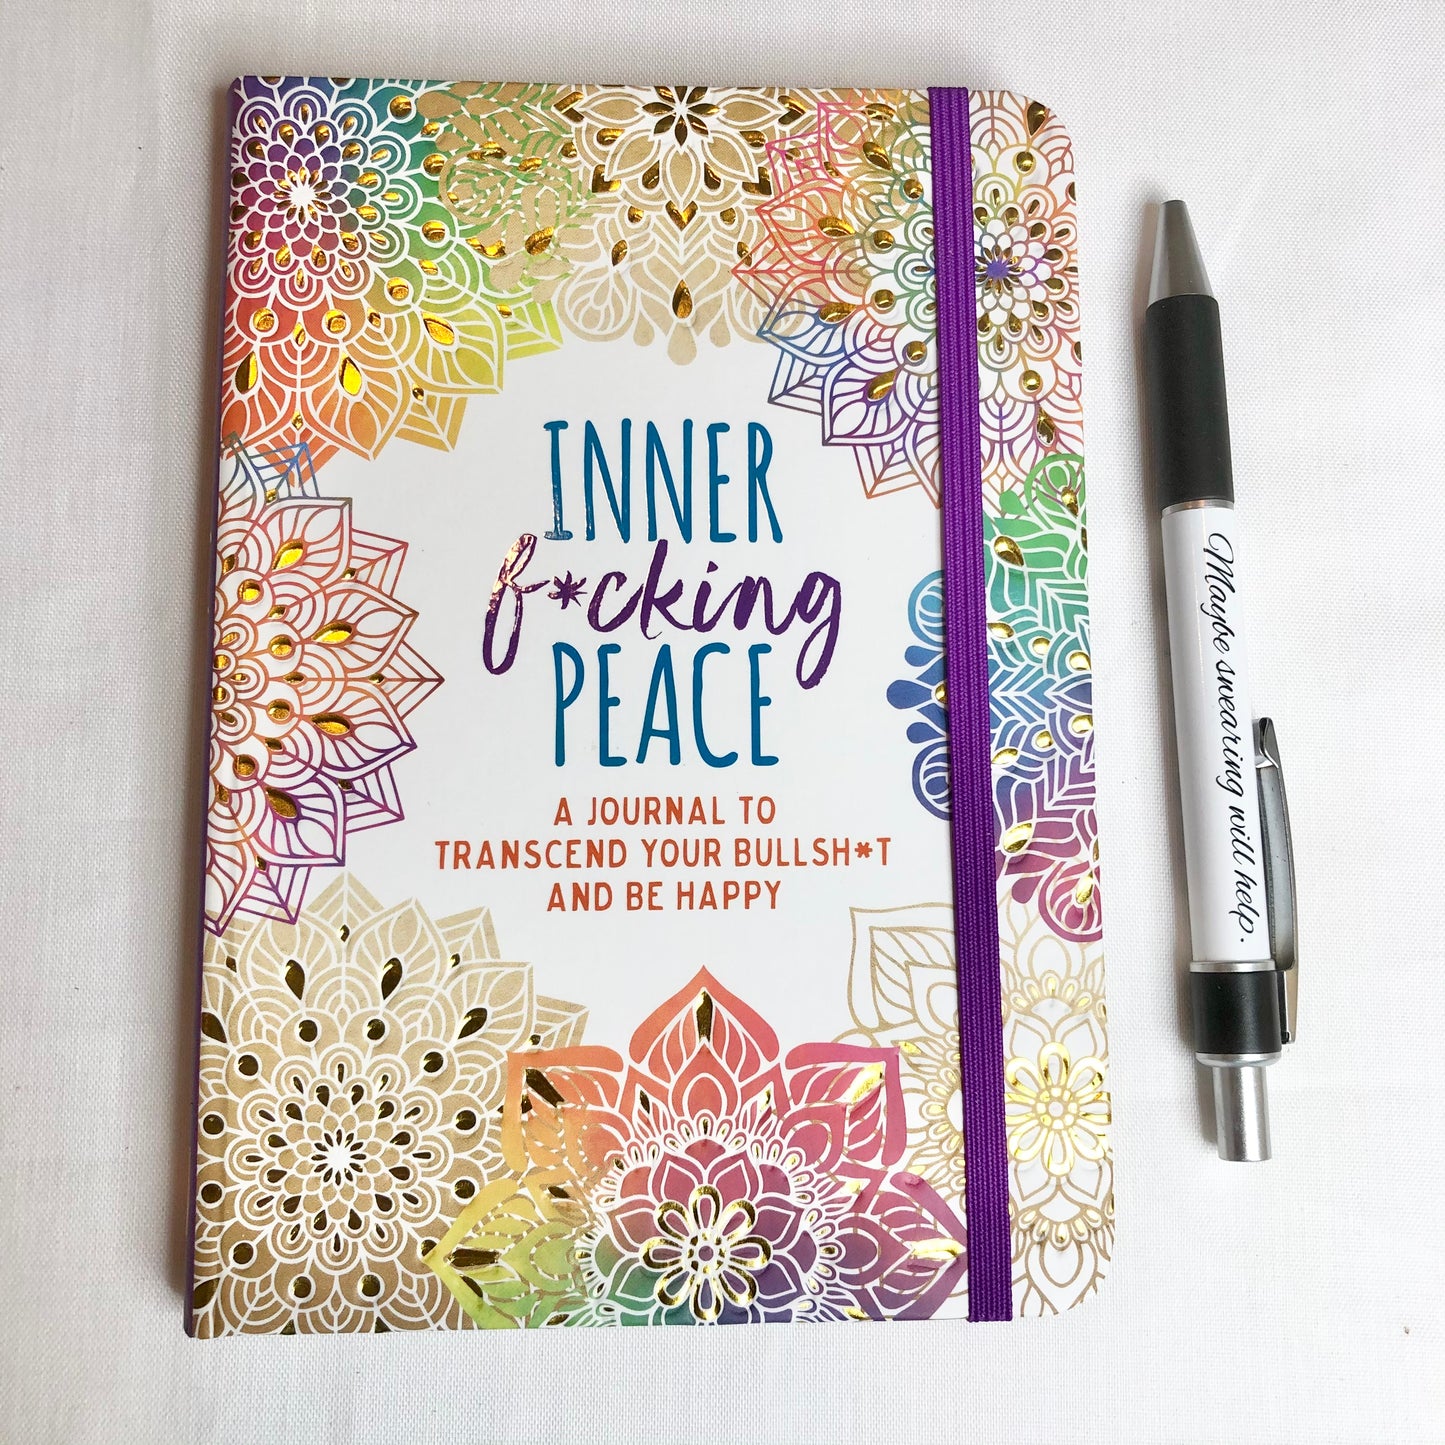 Hard cover inner f*cking peace journal